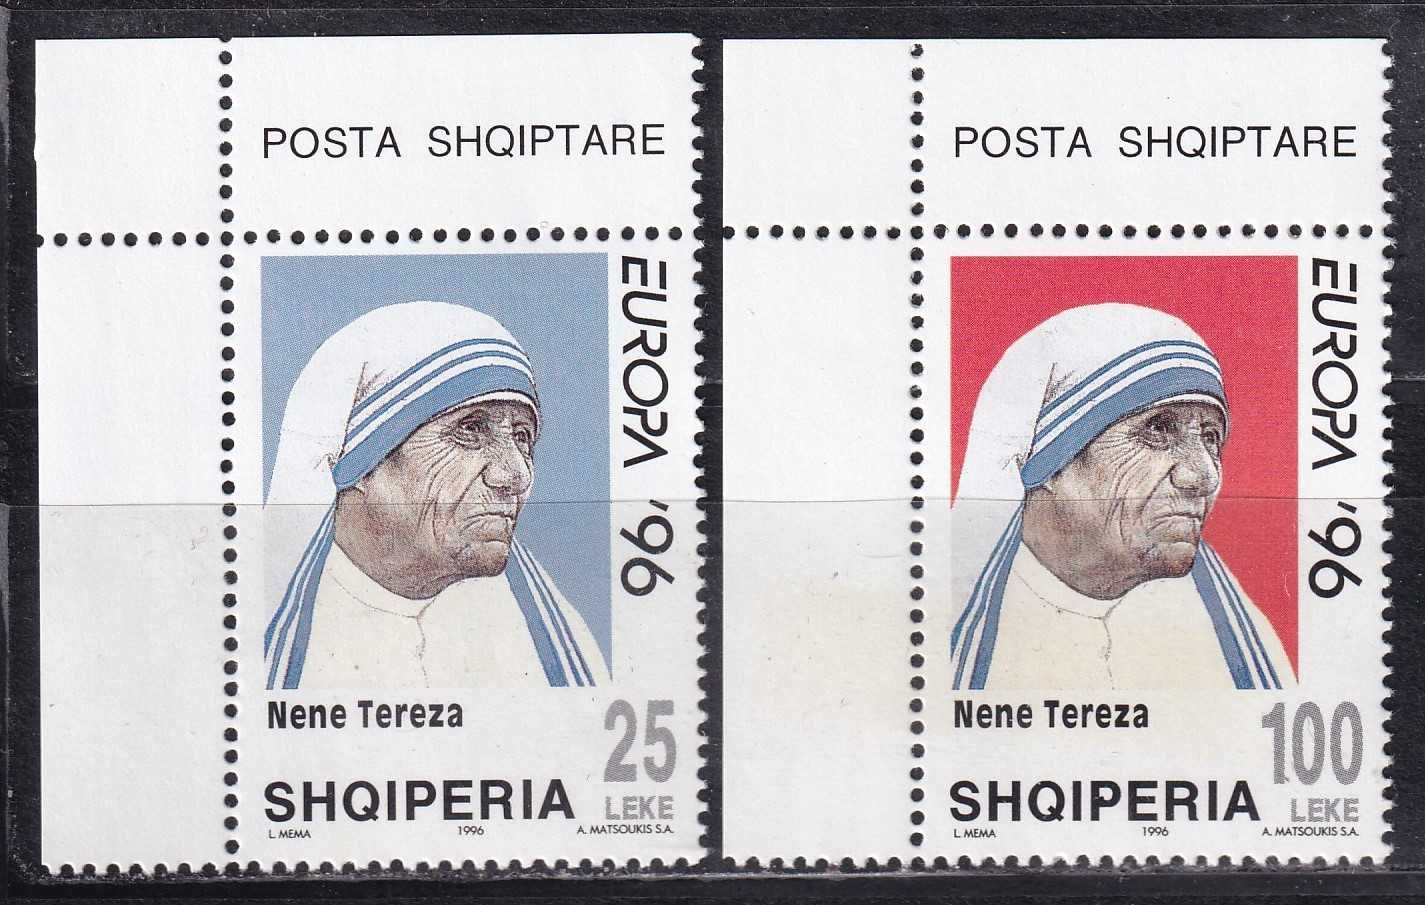 znaczki pocztowe - Albania 1996 cena 4,40 zł kat.3,75€ - M.Teresa